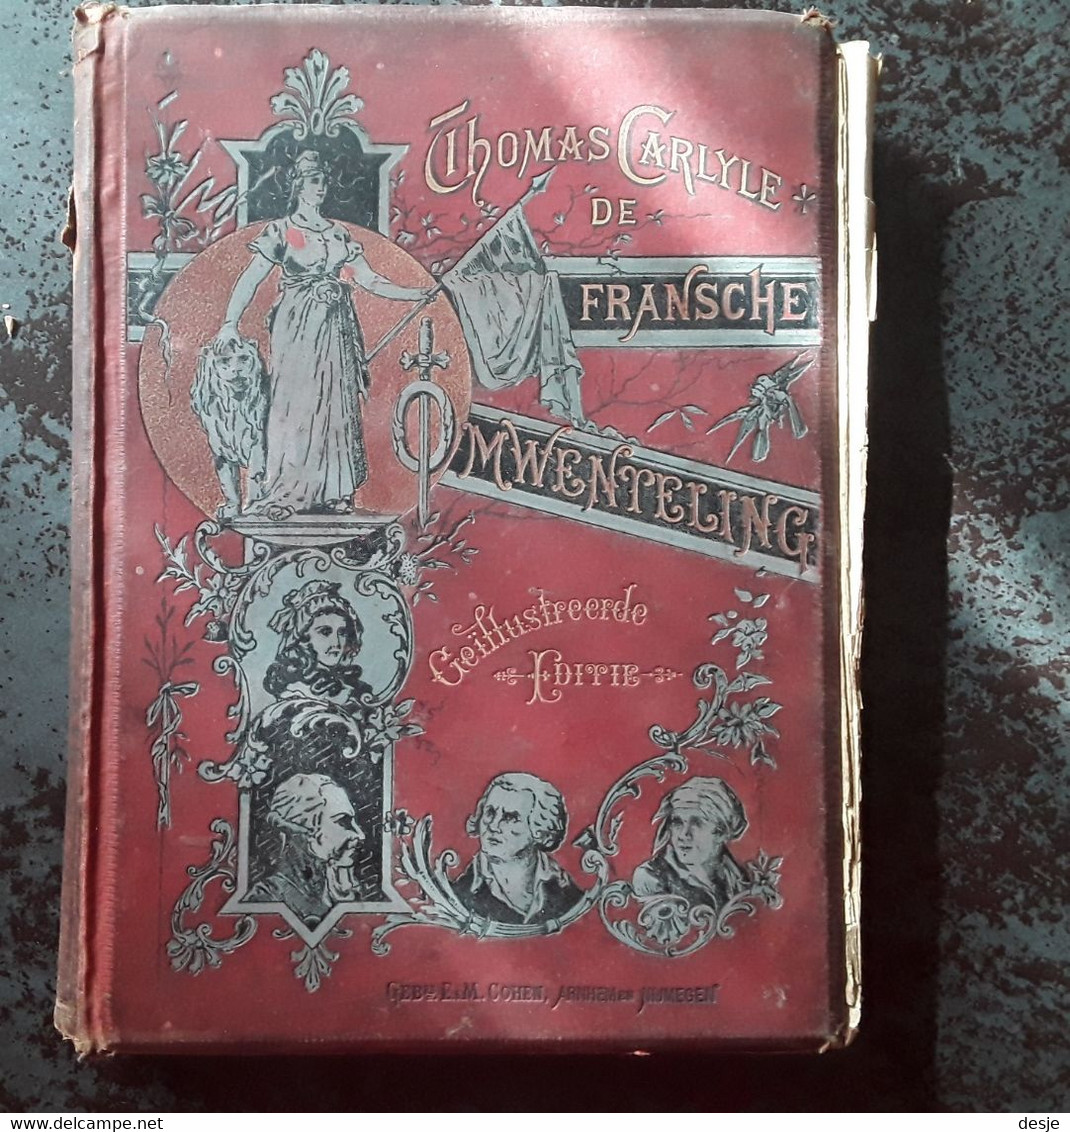 De Fransche Omwenteling Door Thomas Carlyle,tweede Deel De Constitutie, 4de Herziene Druk, Rond 1900, Nijmegen, 316 Pp. - Vecchi